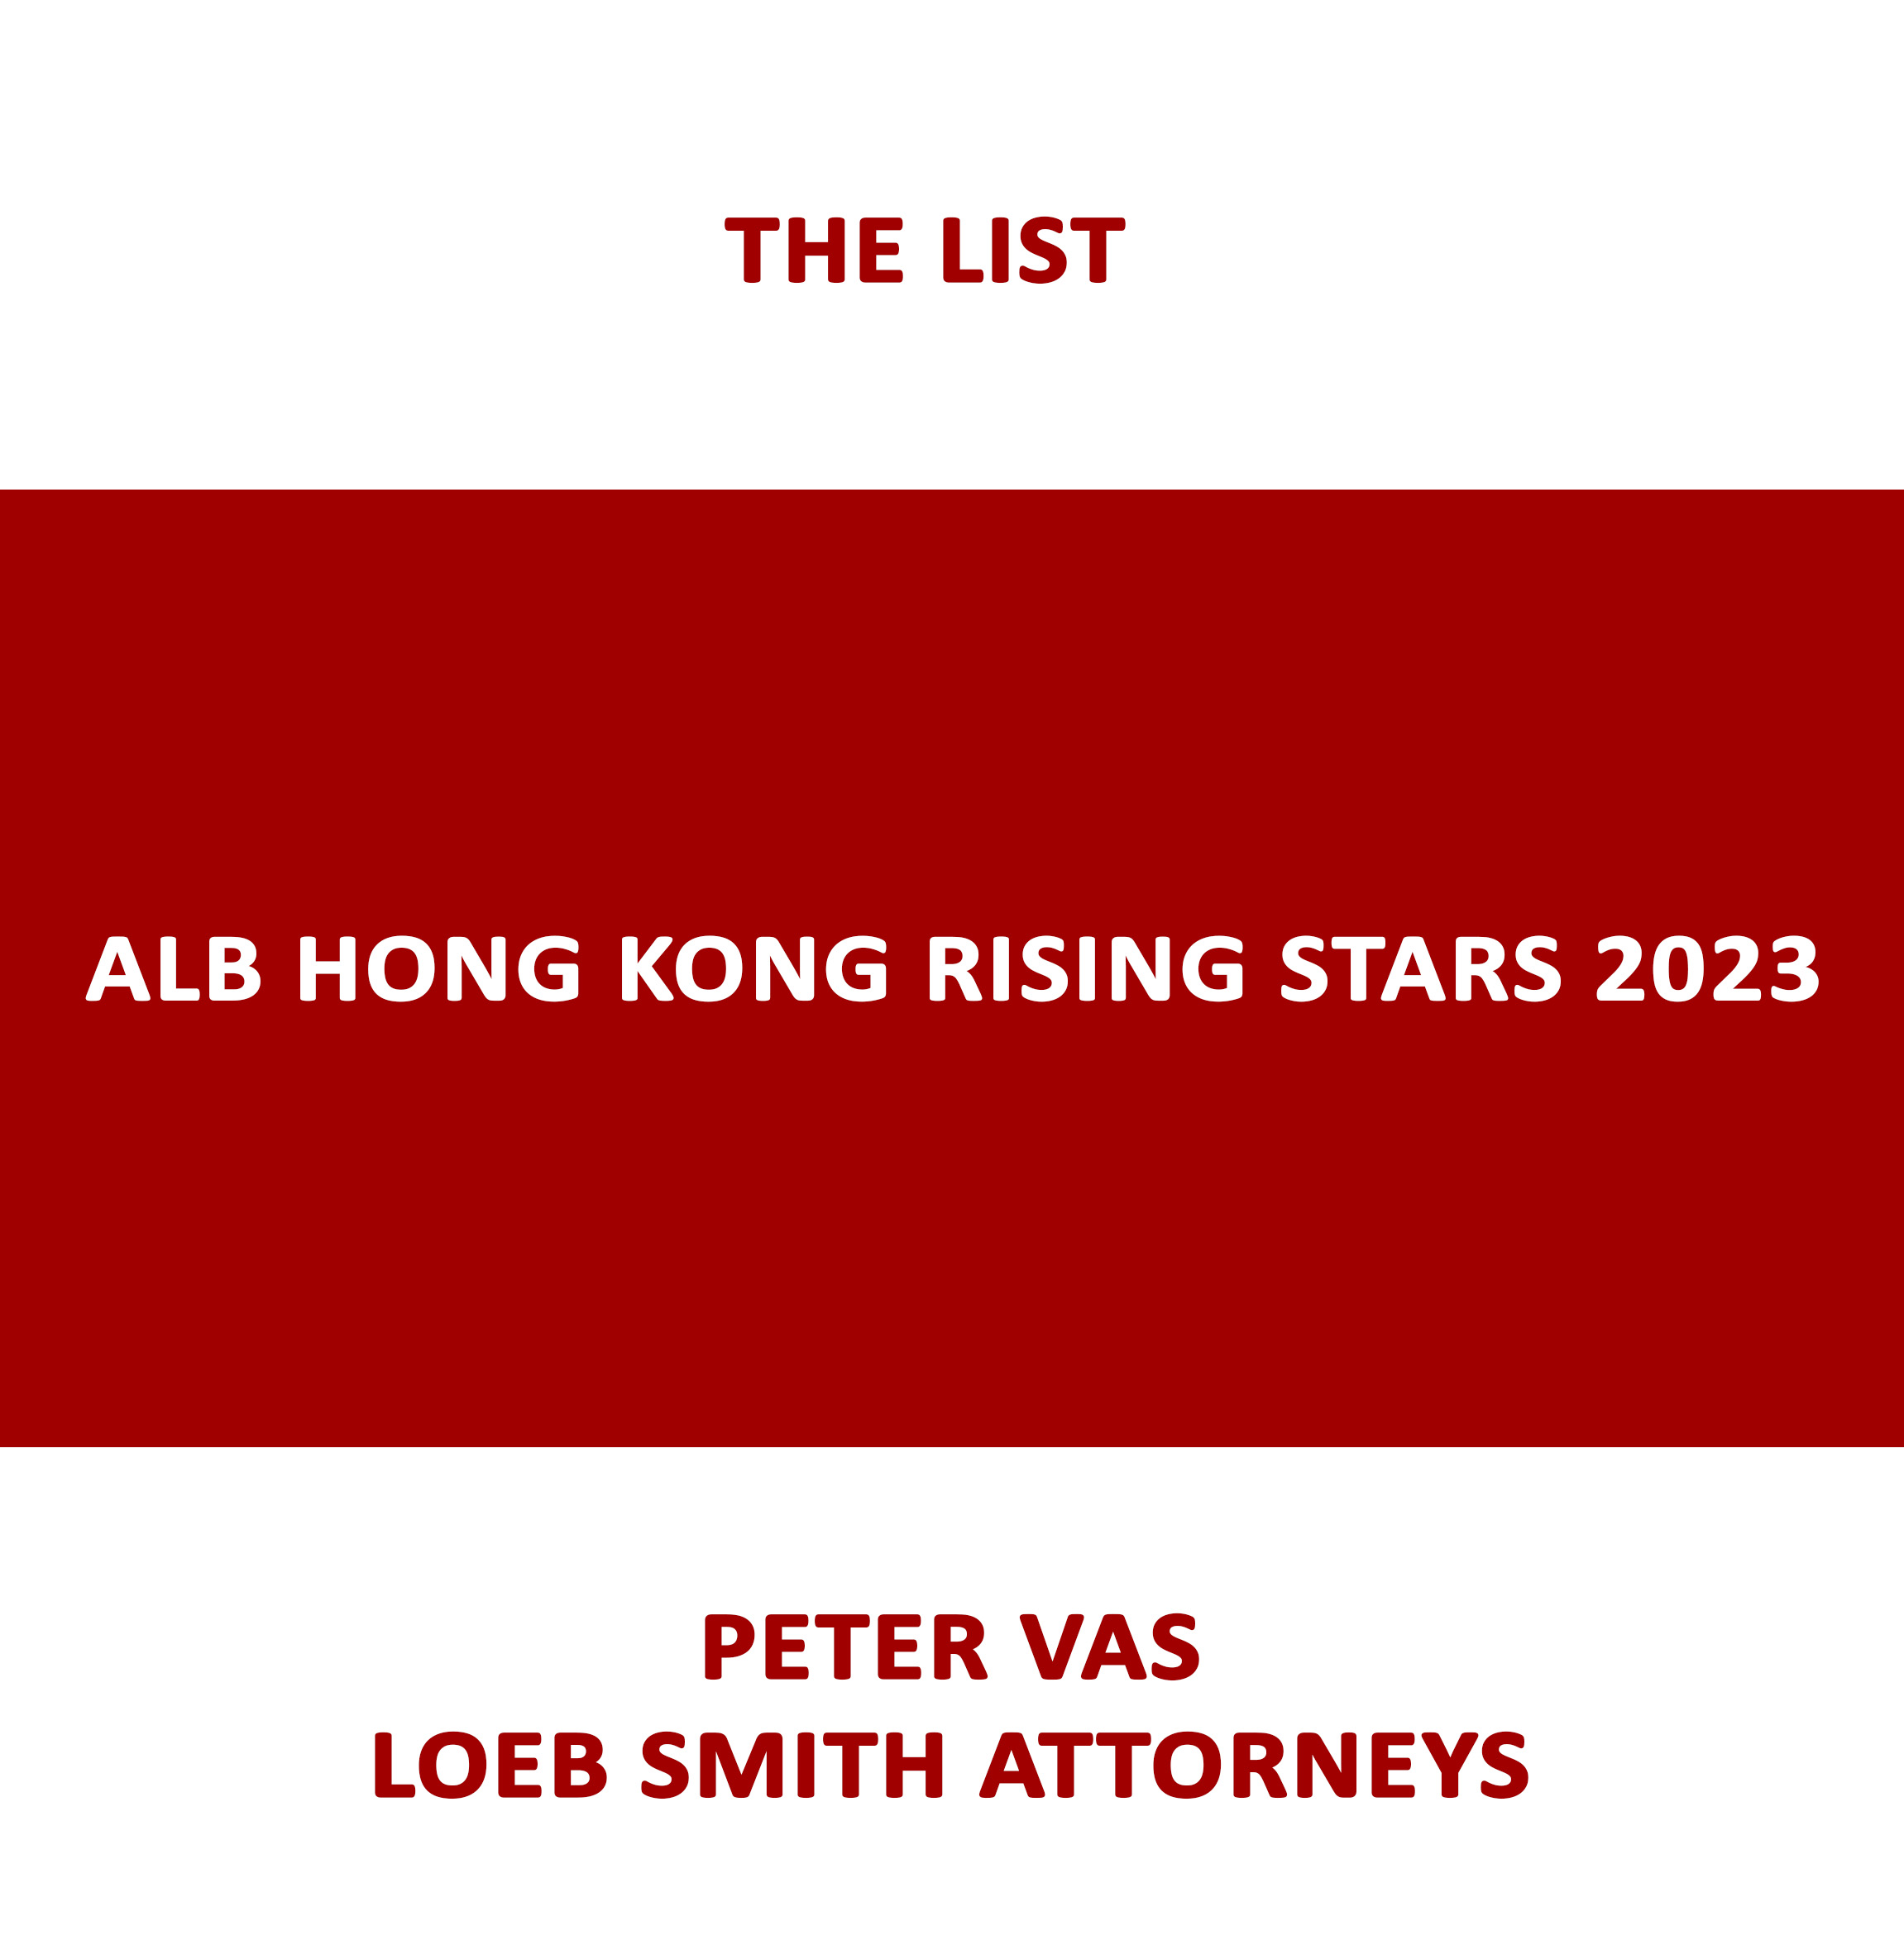 ALB Hong Kong Rising Stars 2023